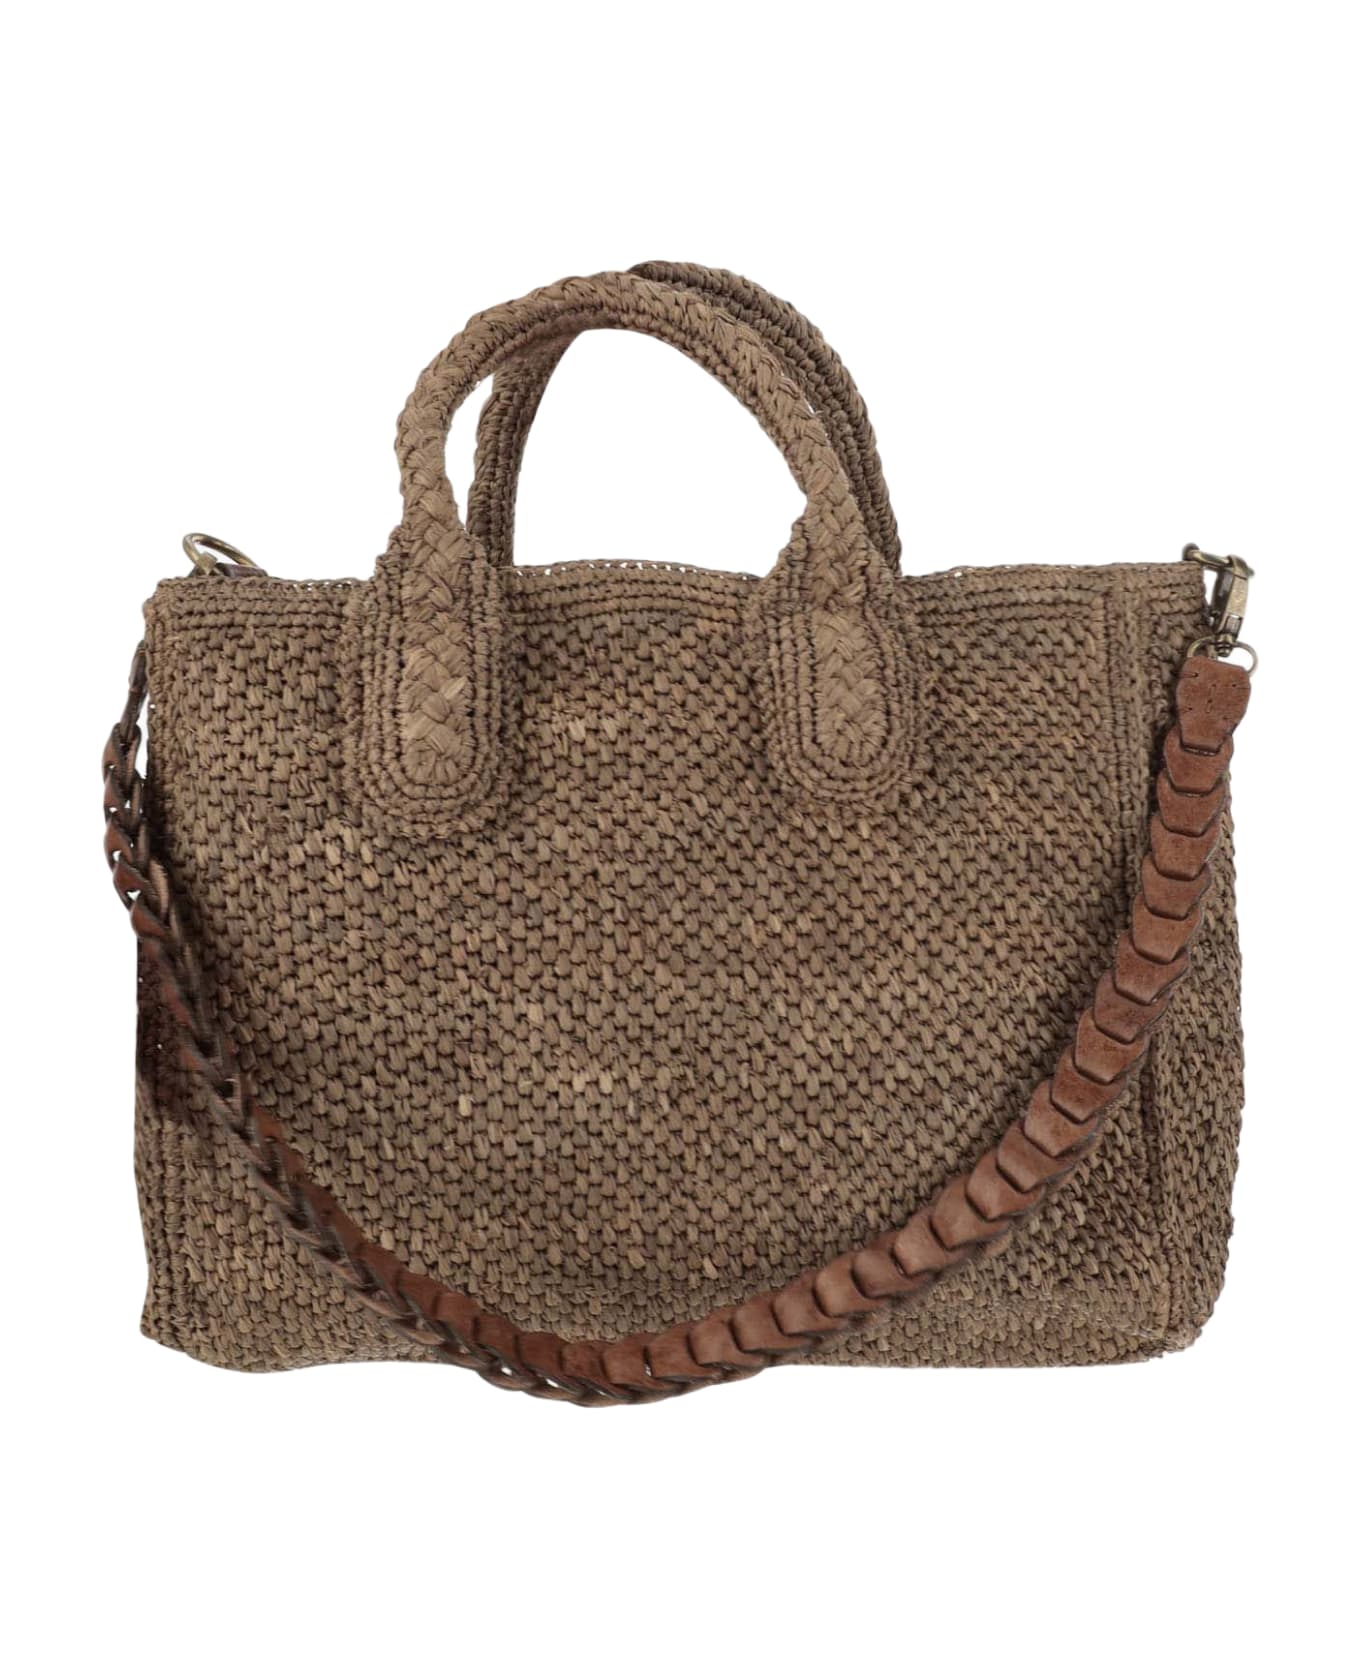 Ibeliv Raffia Bag With Leather Details - Dark tea トートバッグ